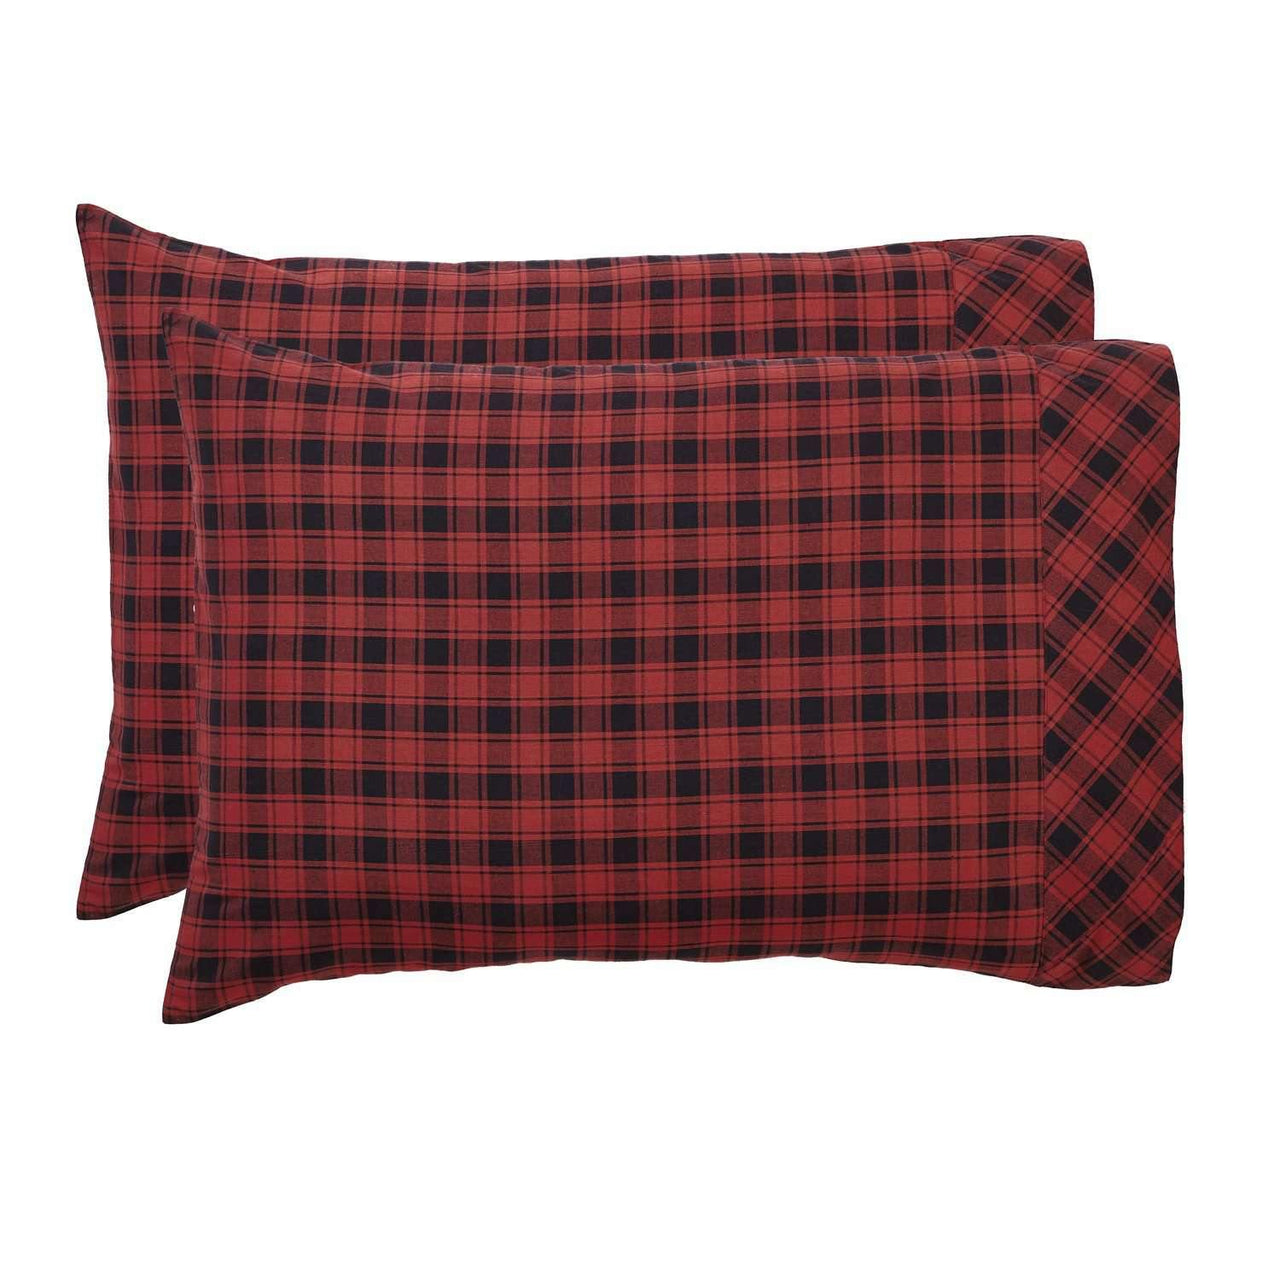 Cumberland Standard Pillow Case Set of 2 21x30 VHC Brands - The Fox Decor